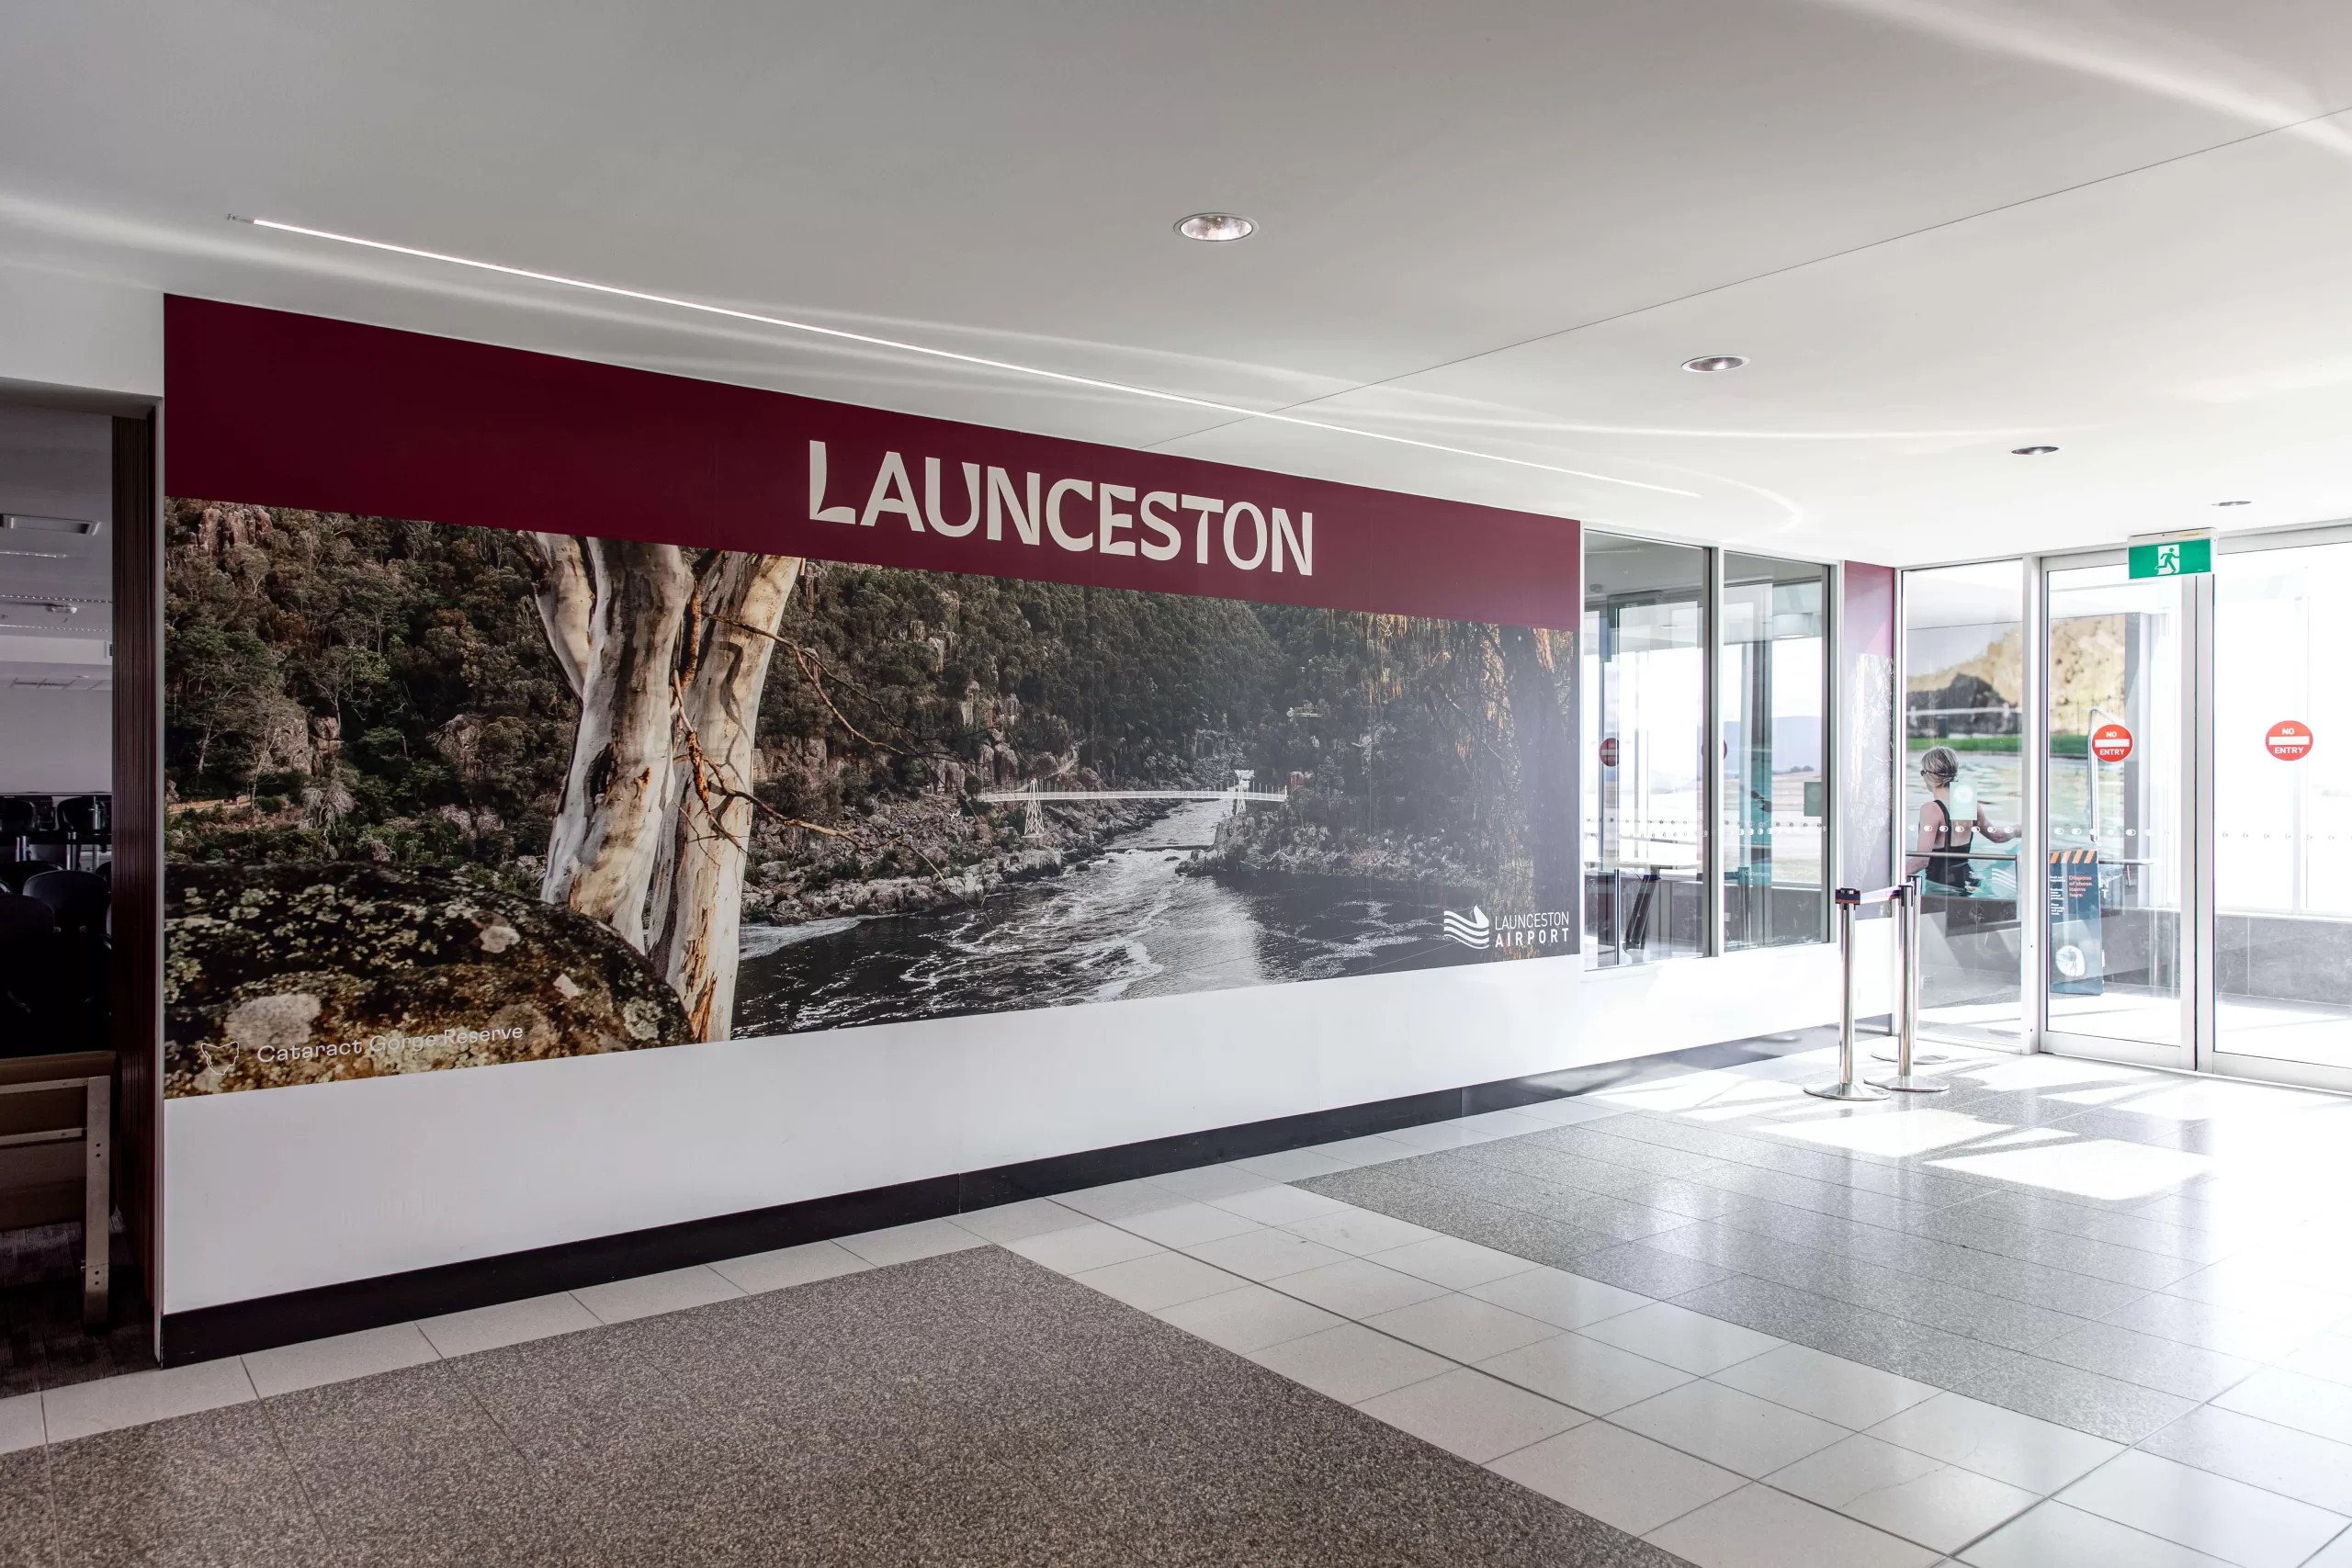 Launceston Airport